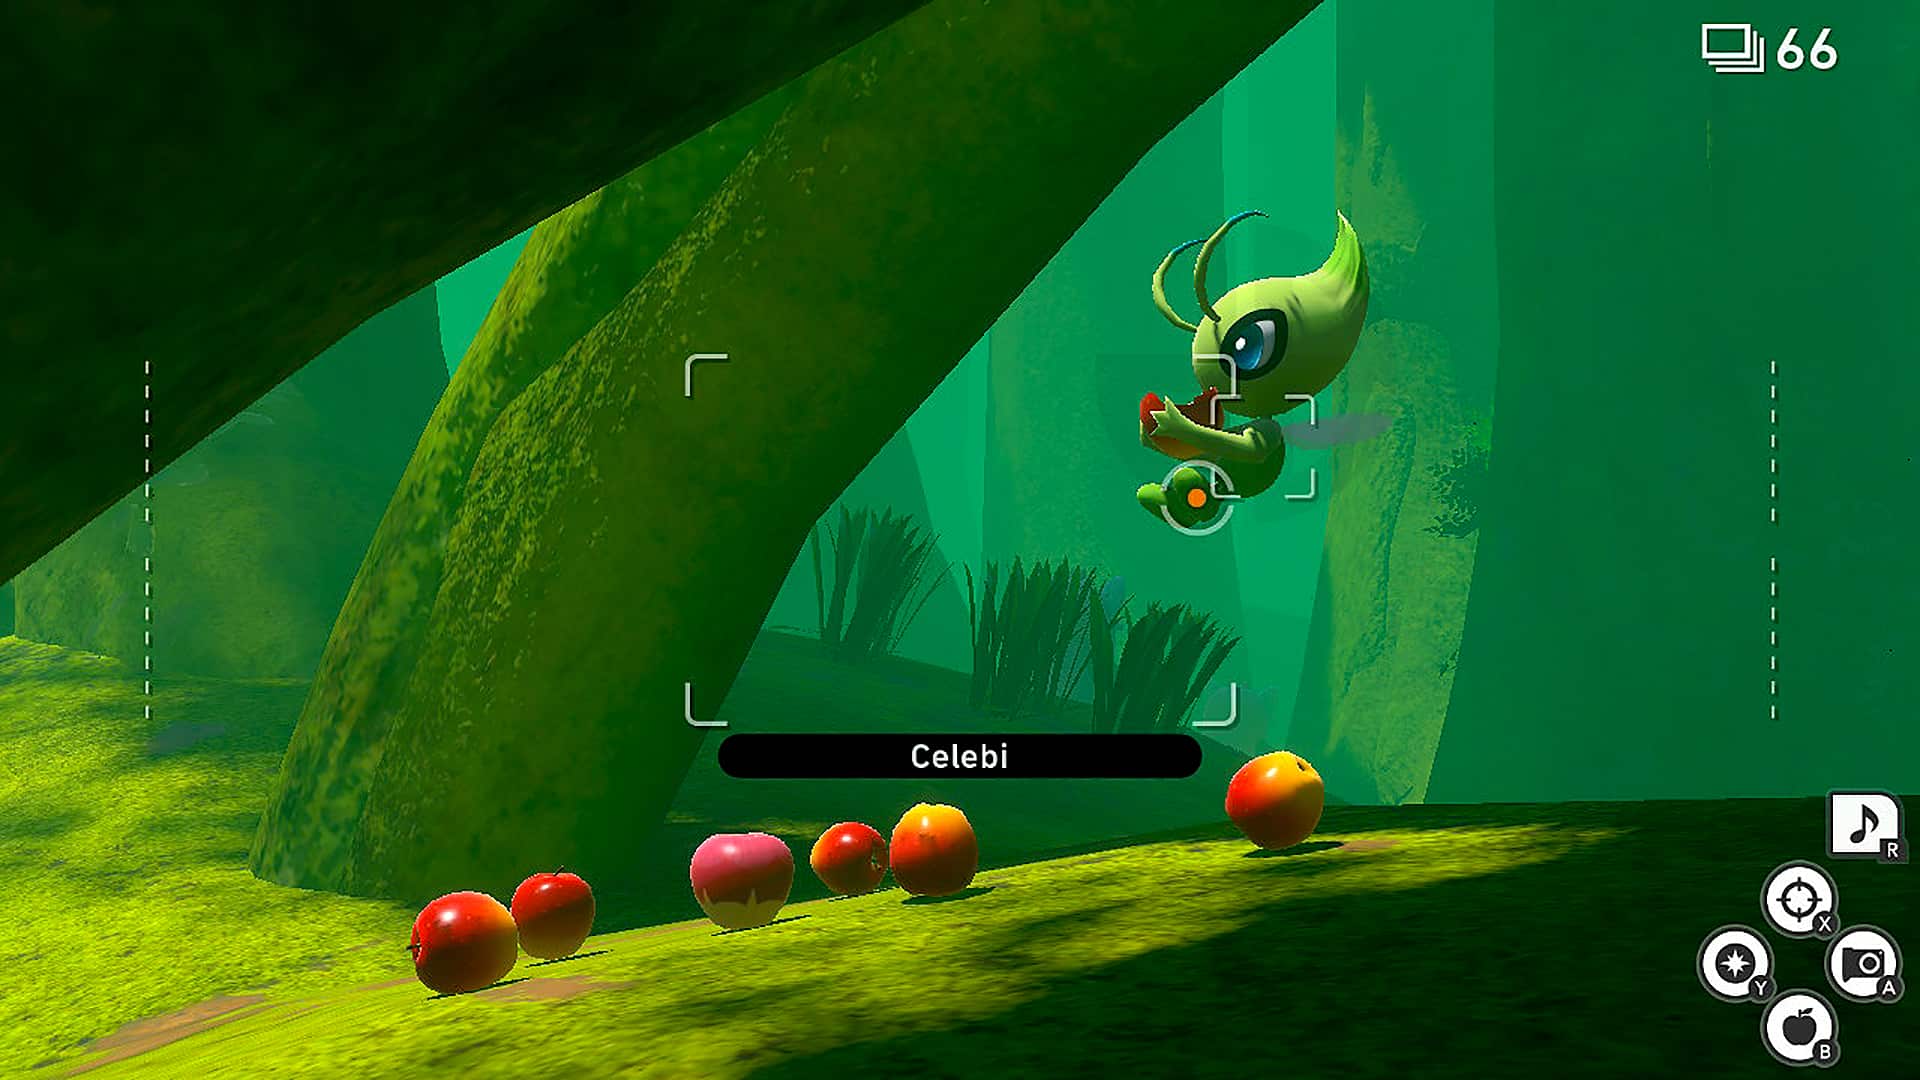 Celebi eating apples in New Pokemon Snap